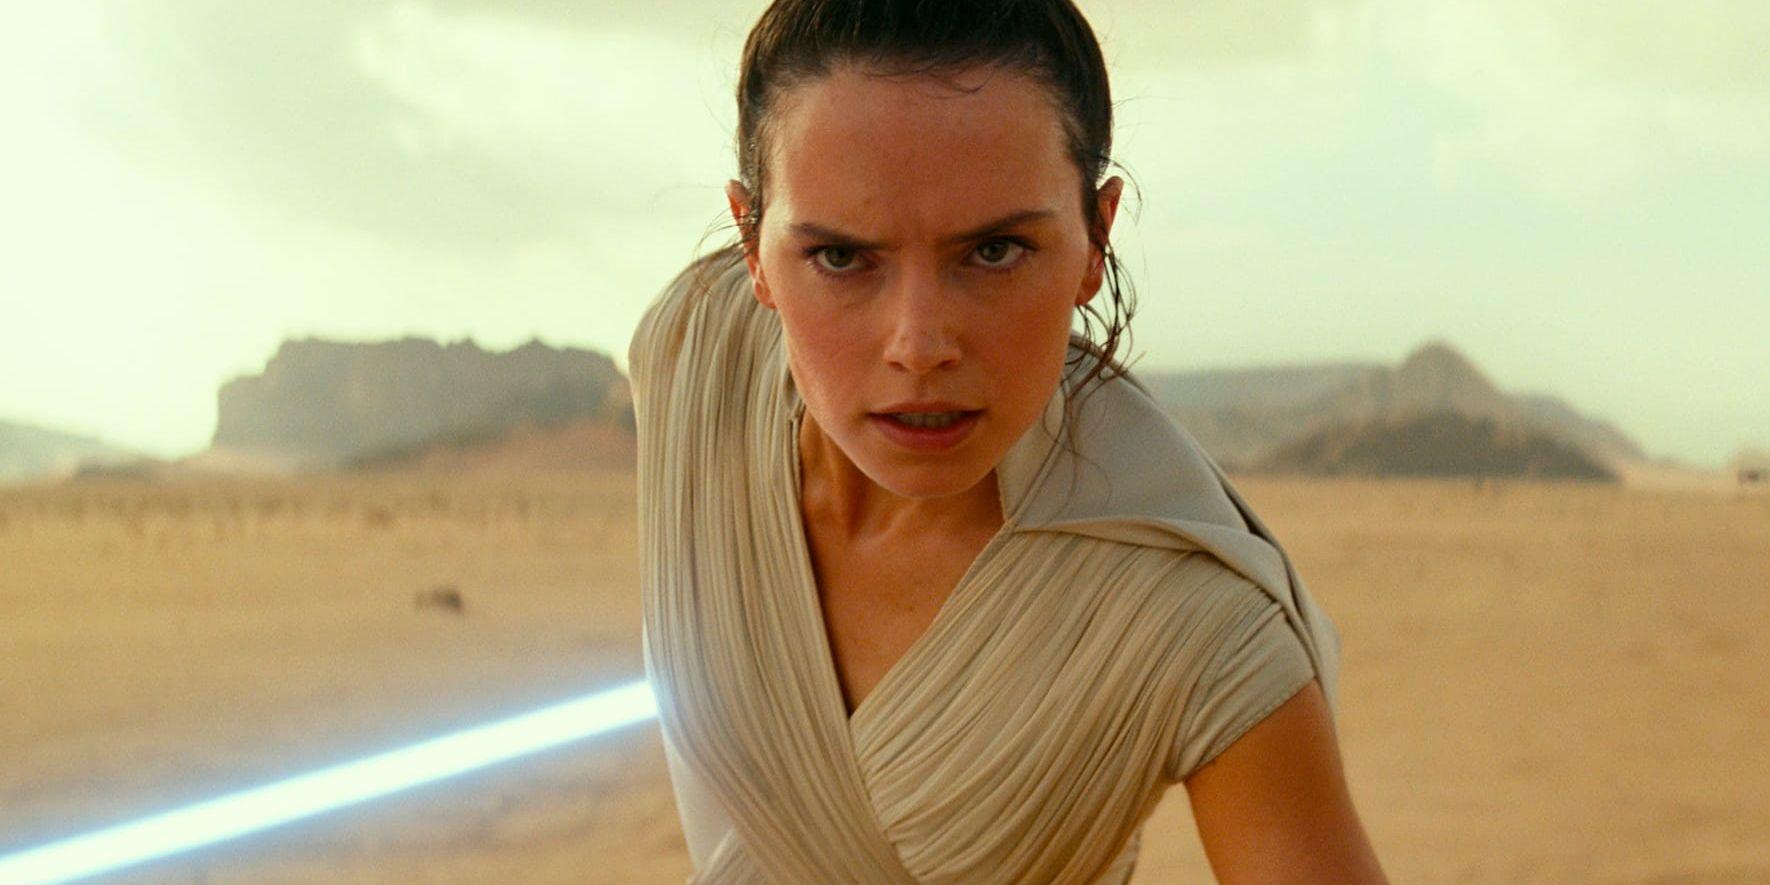 "Star wars" tar en paus efter att "The rise of Skywalker" har premiär i december, enligt Disney. Arkivbild.